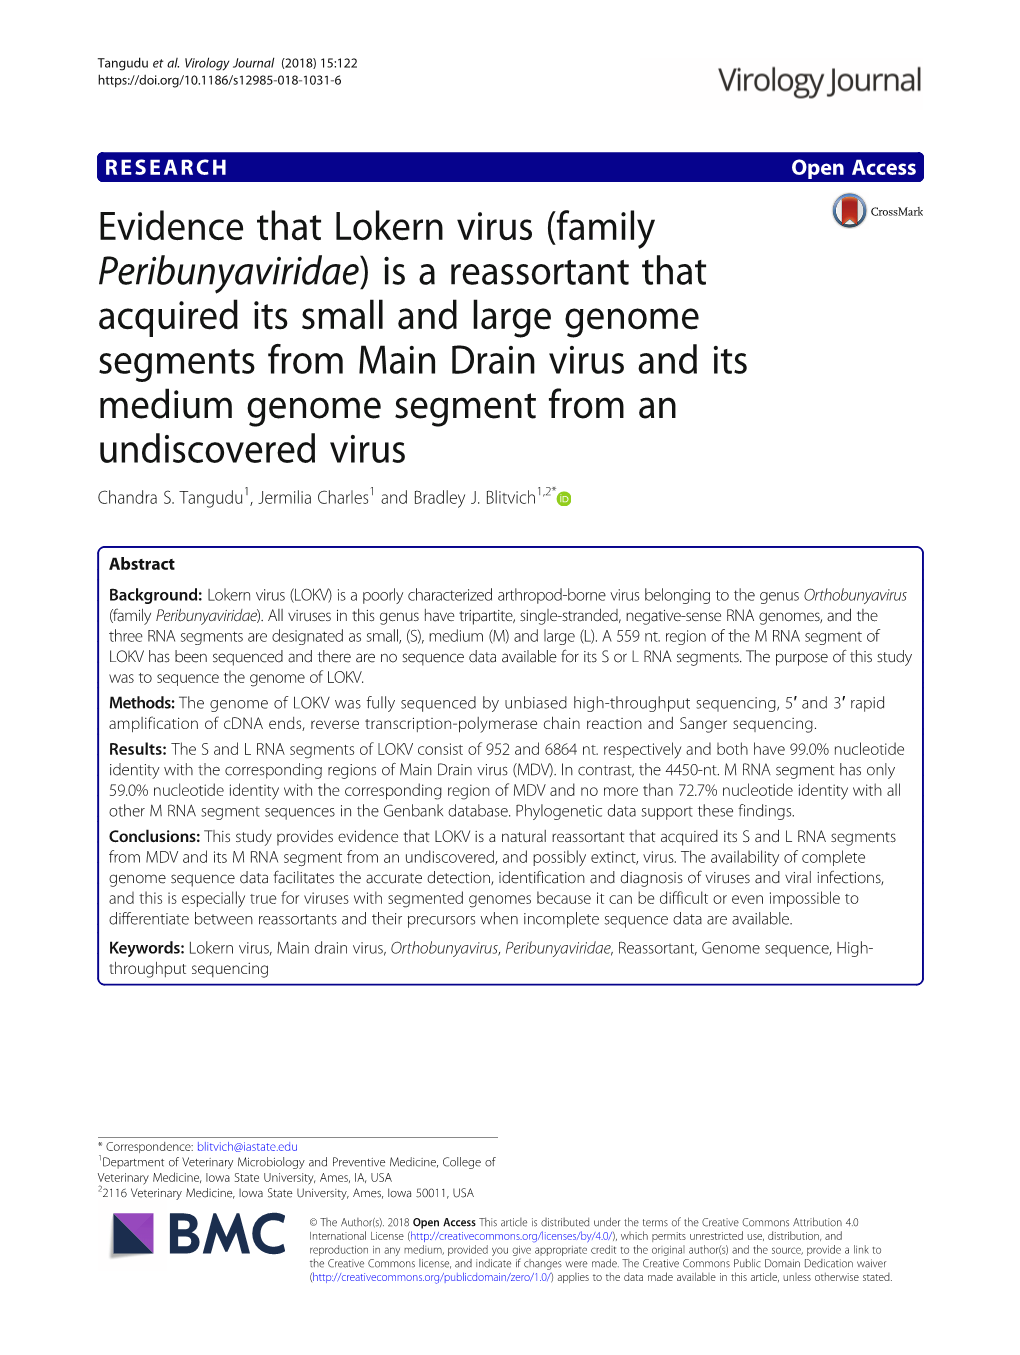 Evidence That Lokern Virus